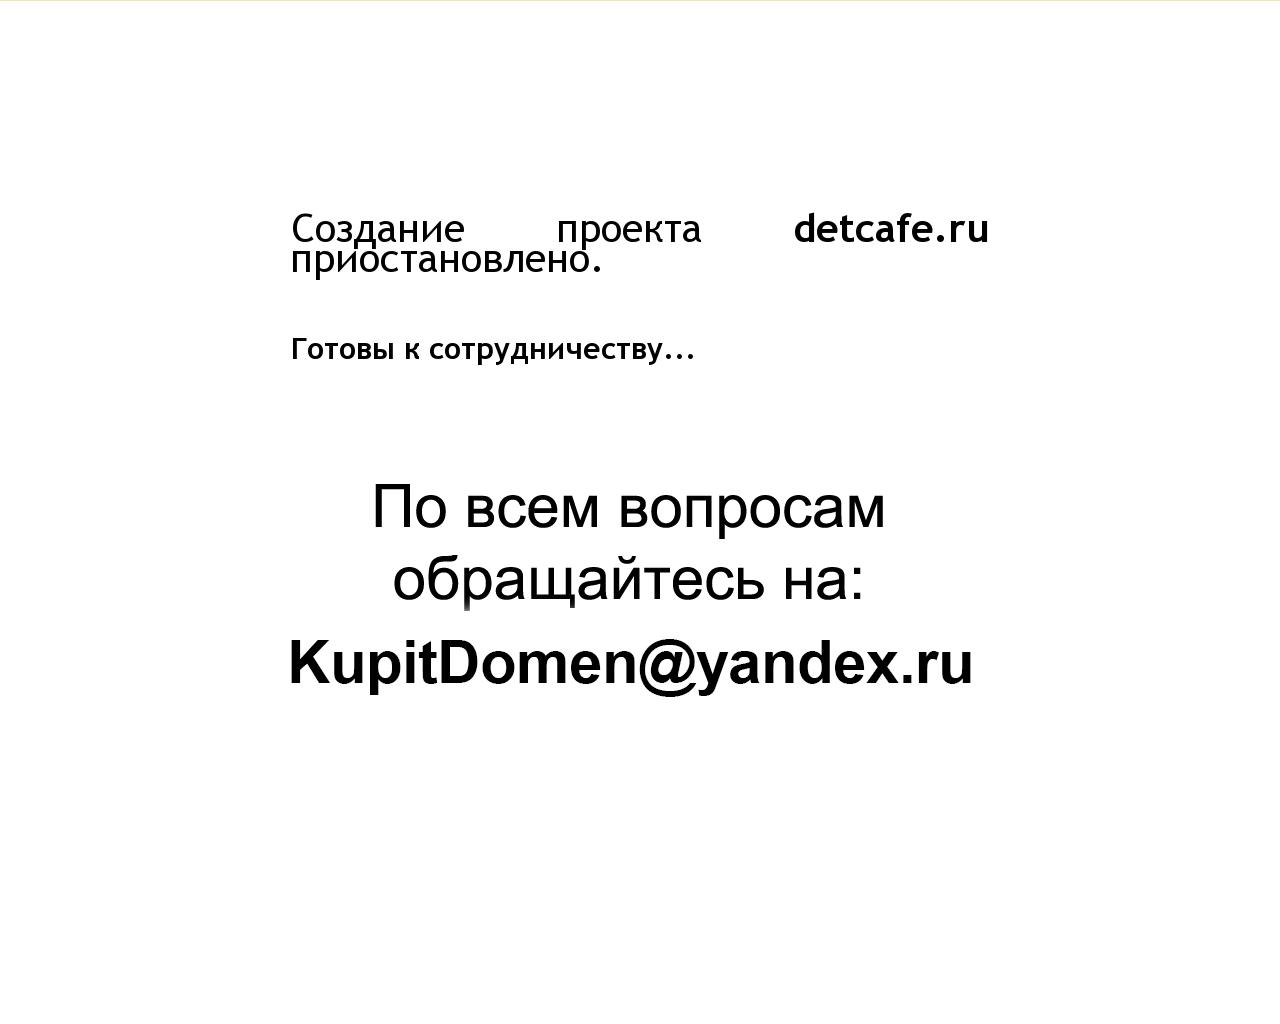 Изображение сайта detcafe.ru в разрешении 1280x1024